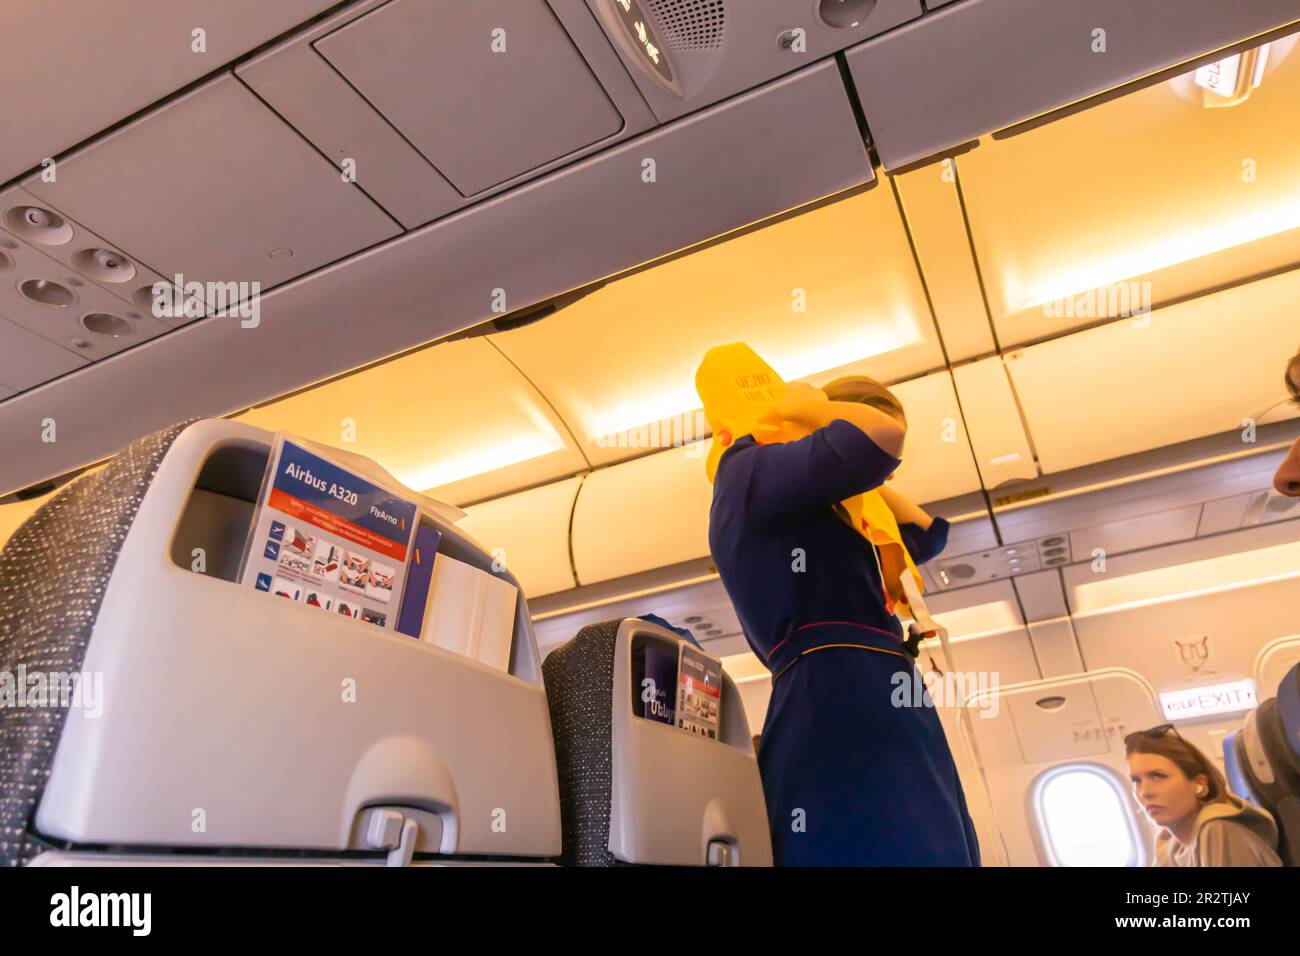 Un agent de bord démontrant la gilet de sauvetage aux passagers d'un avion Airbus A320 exploité par Fly Arna Banque D'Images